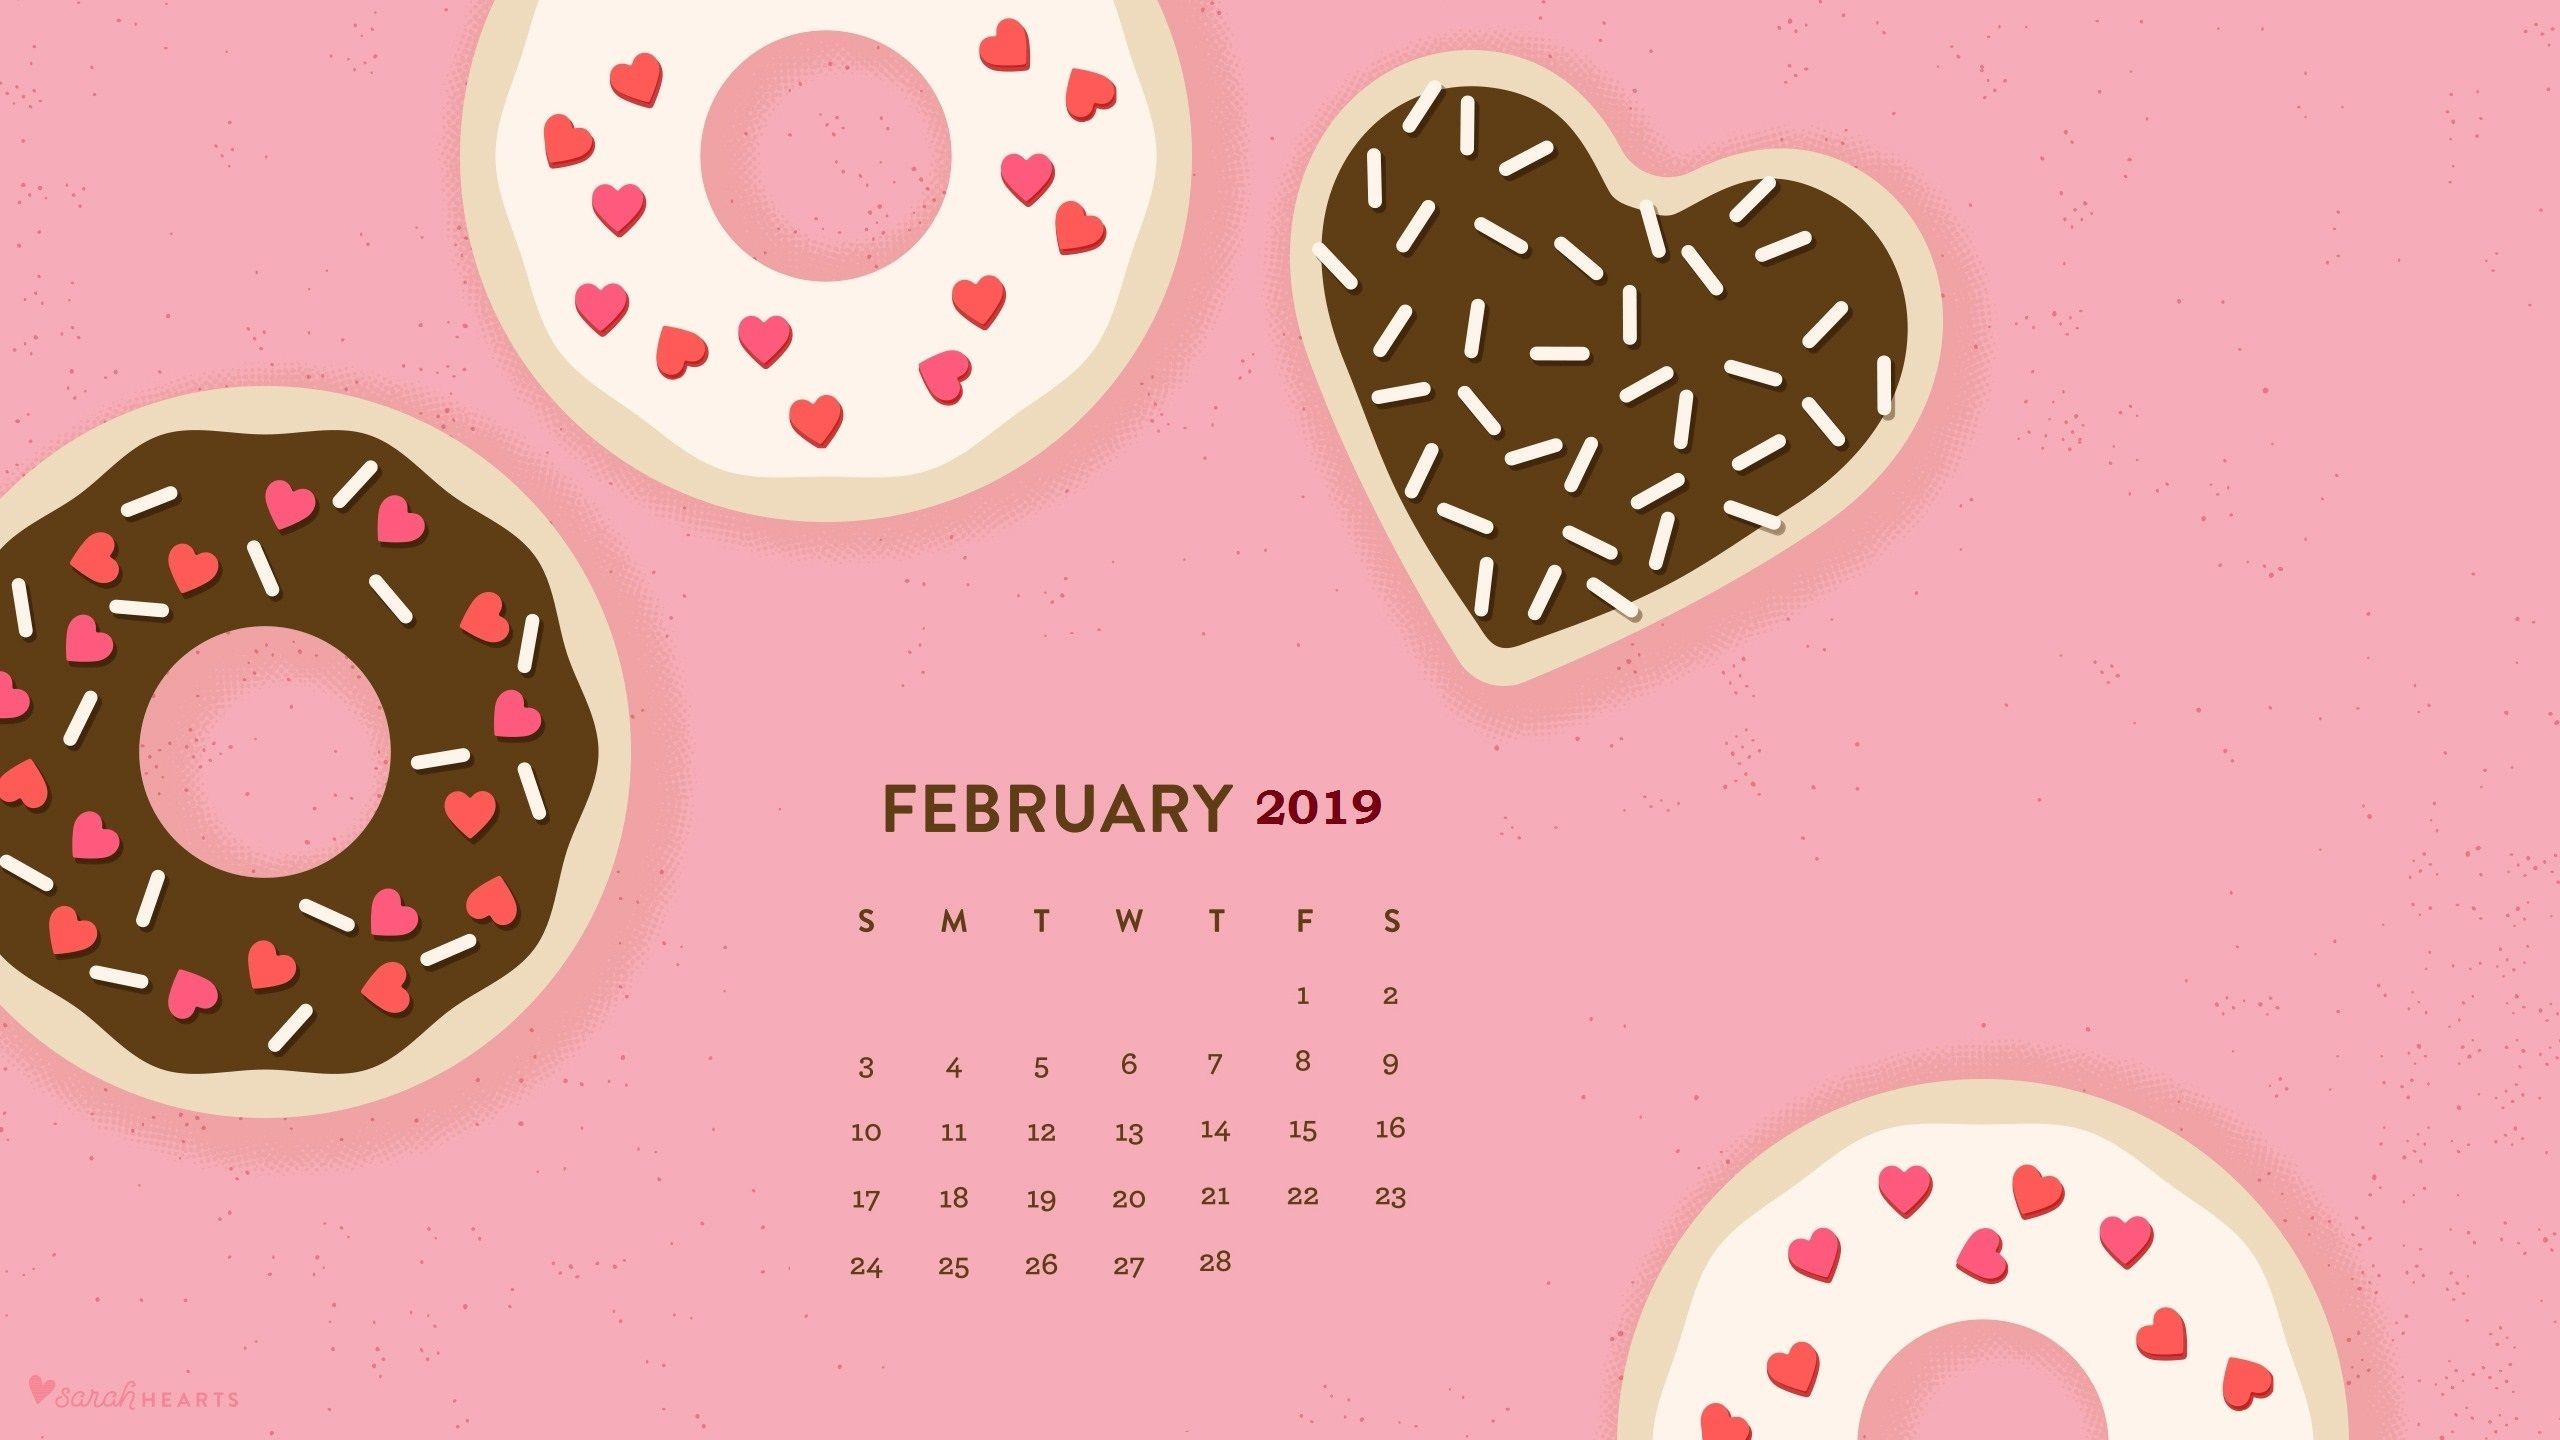 2560x1440 February 2019 Desktop Calendar Wallpaper February 2019 HD Calendar Wallpaper